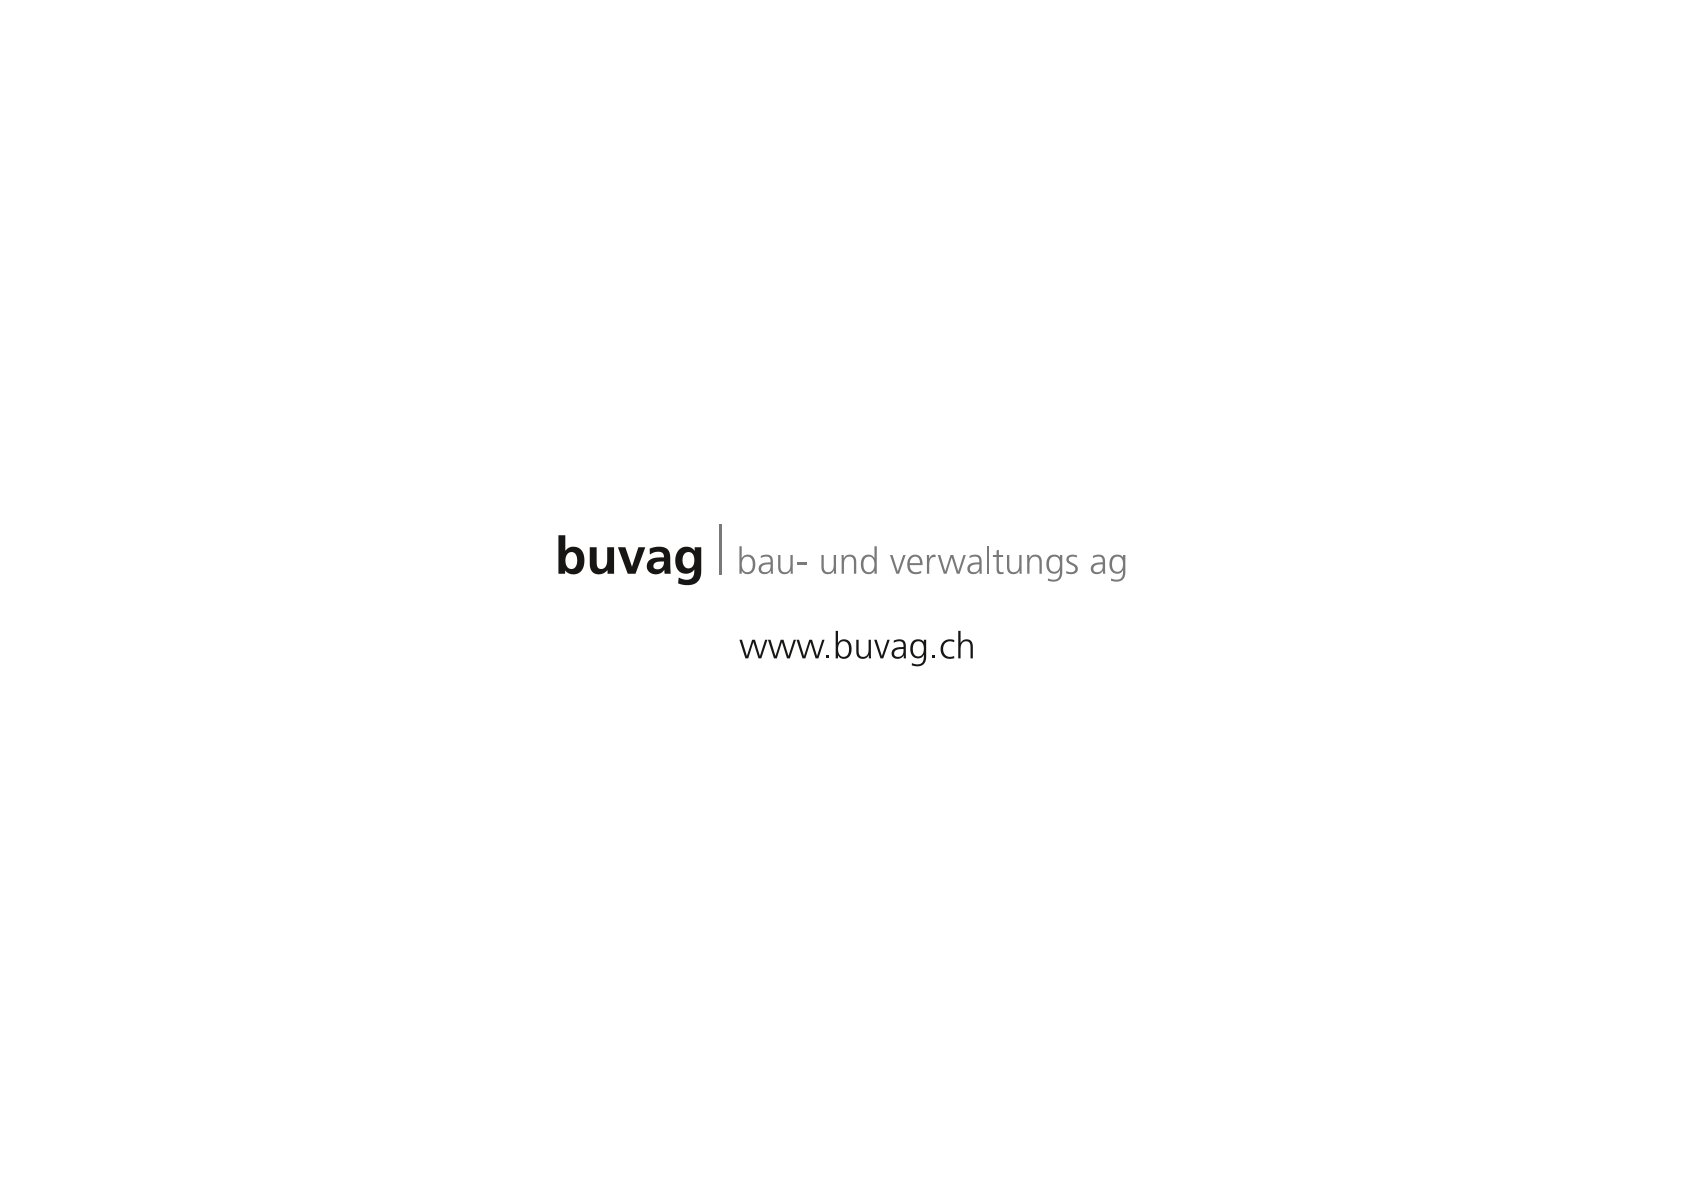 BUVAG : Bau- und Verwaltungs AG, Architekturbüro